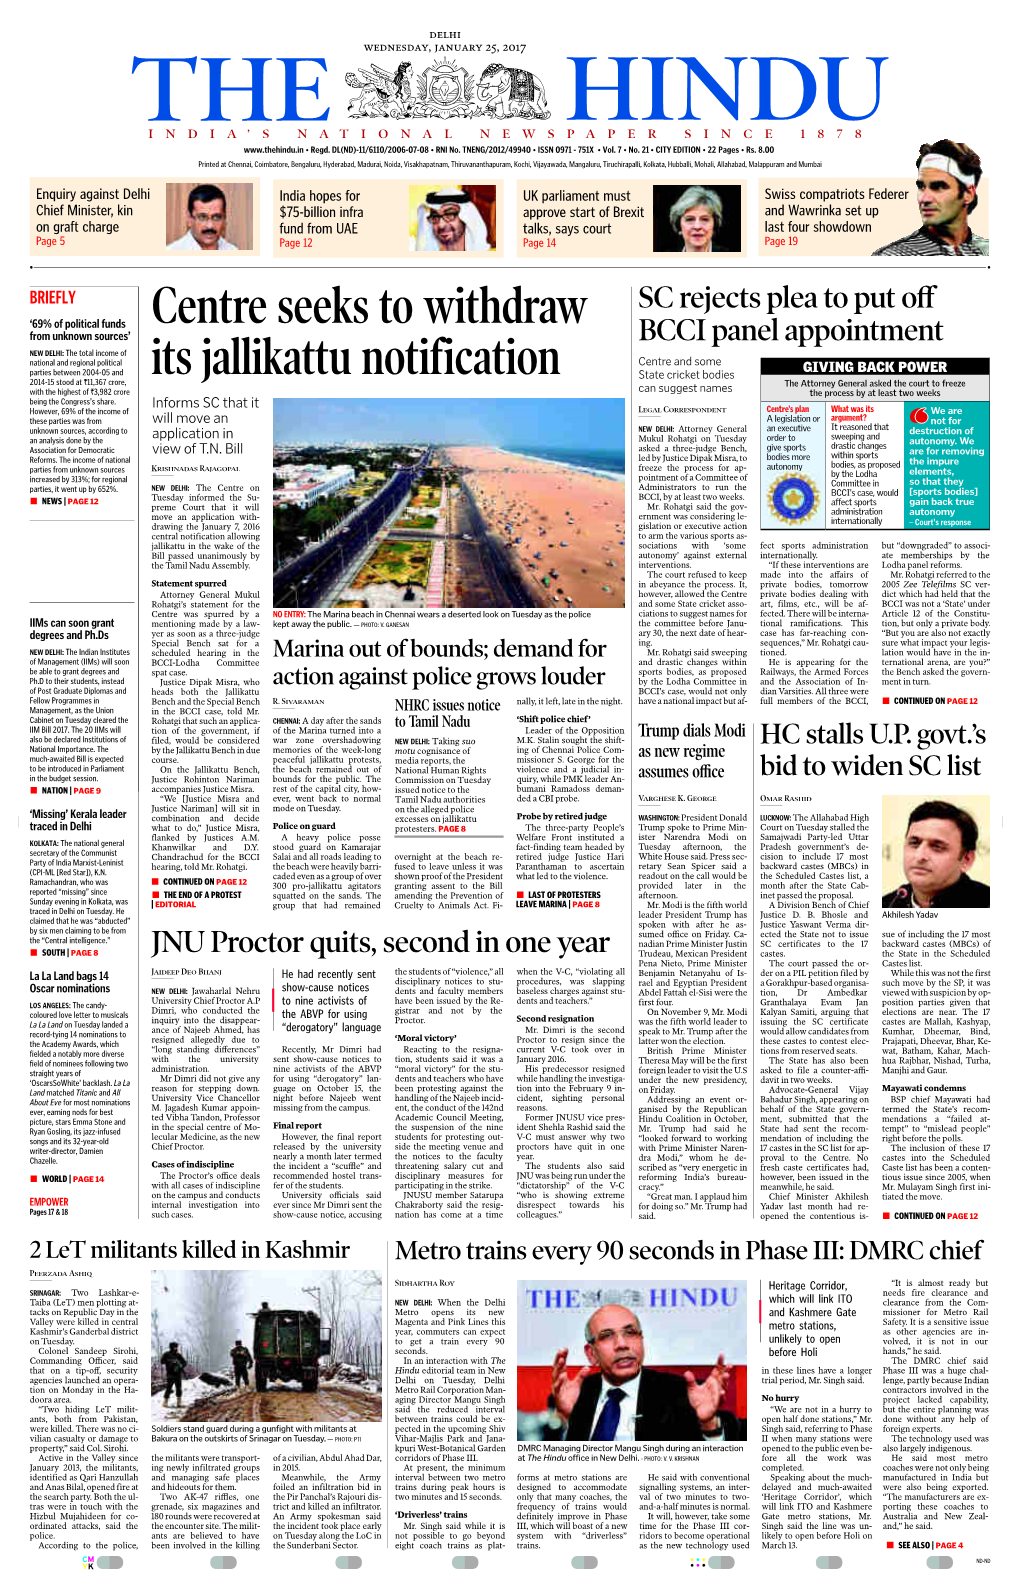 Centre Seeks to Withdraw Its Jallikattu Notification